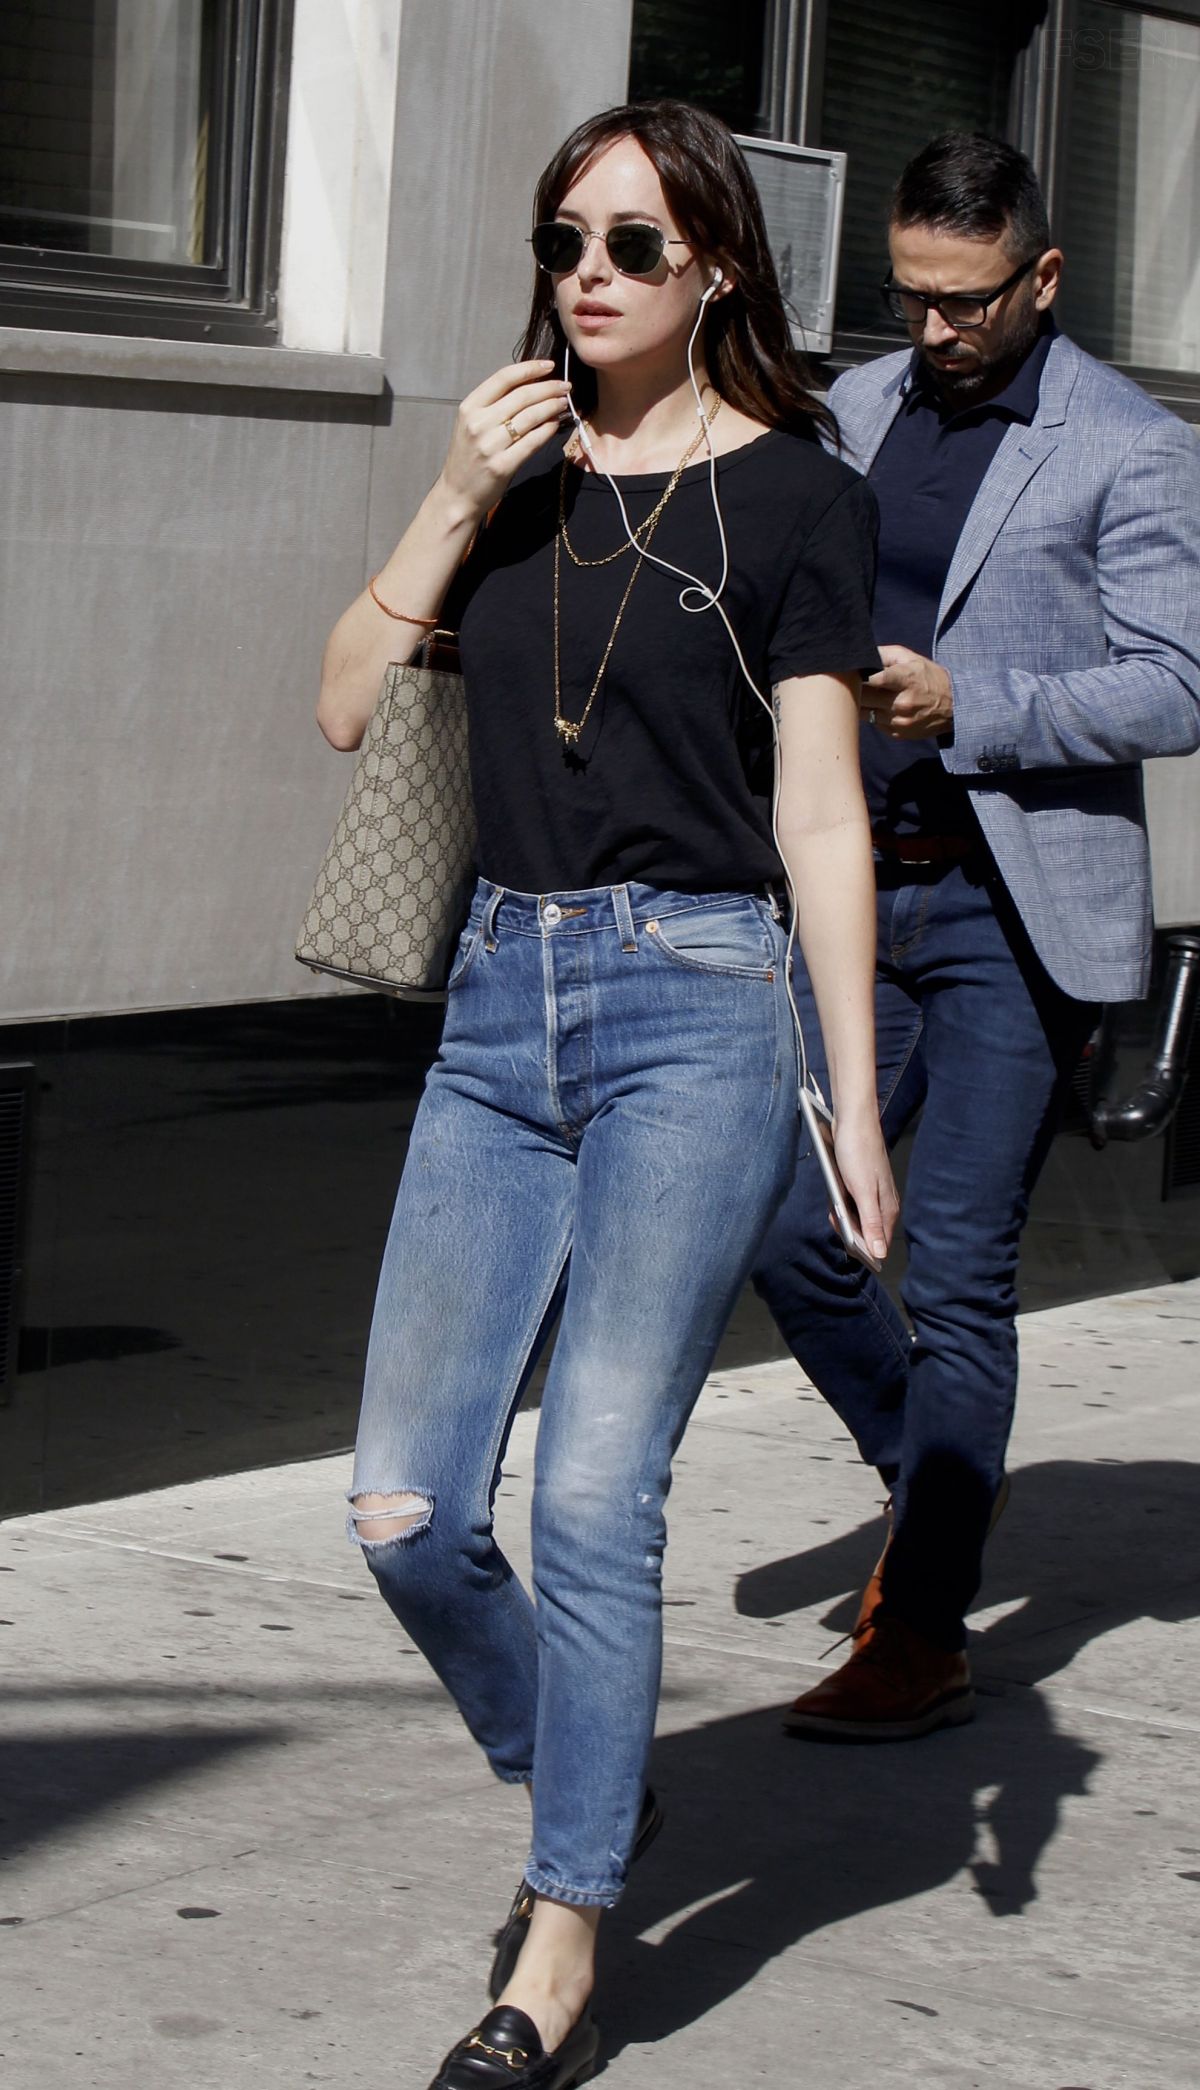 DAKOTA JOHNSON in Jeans Out in New York 10/19/2016 – HawtCelebs